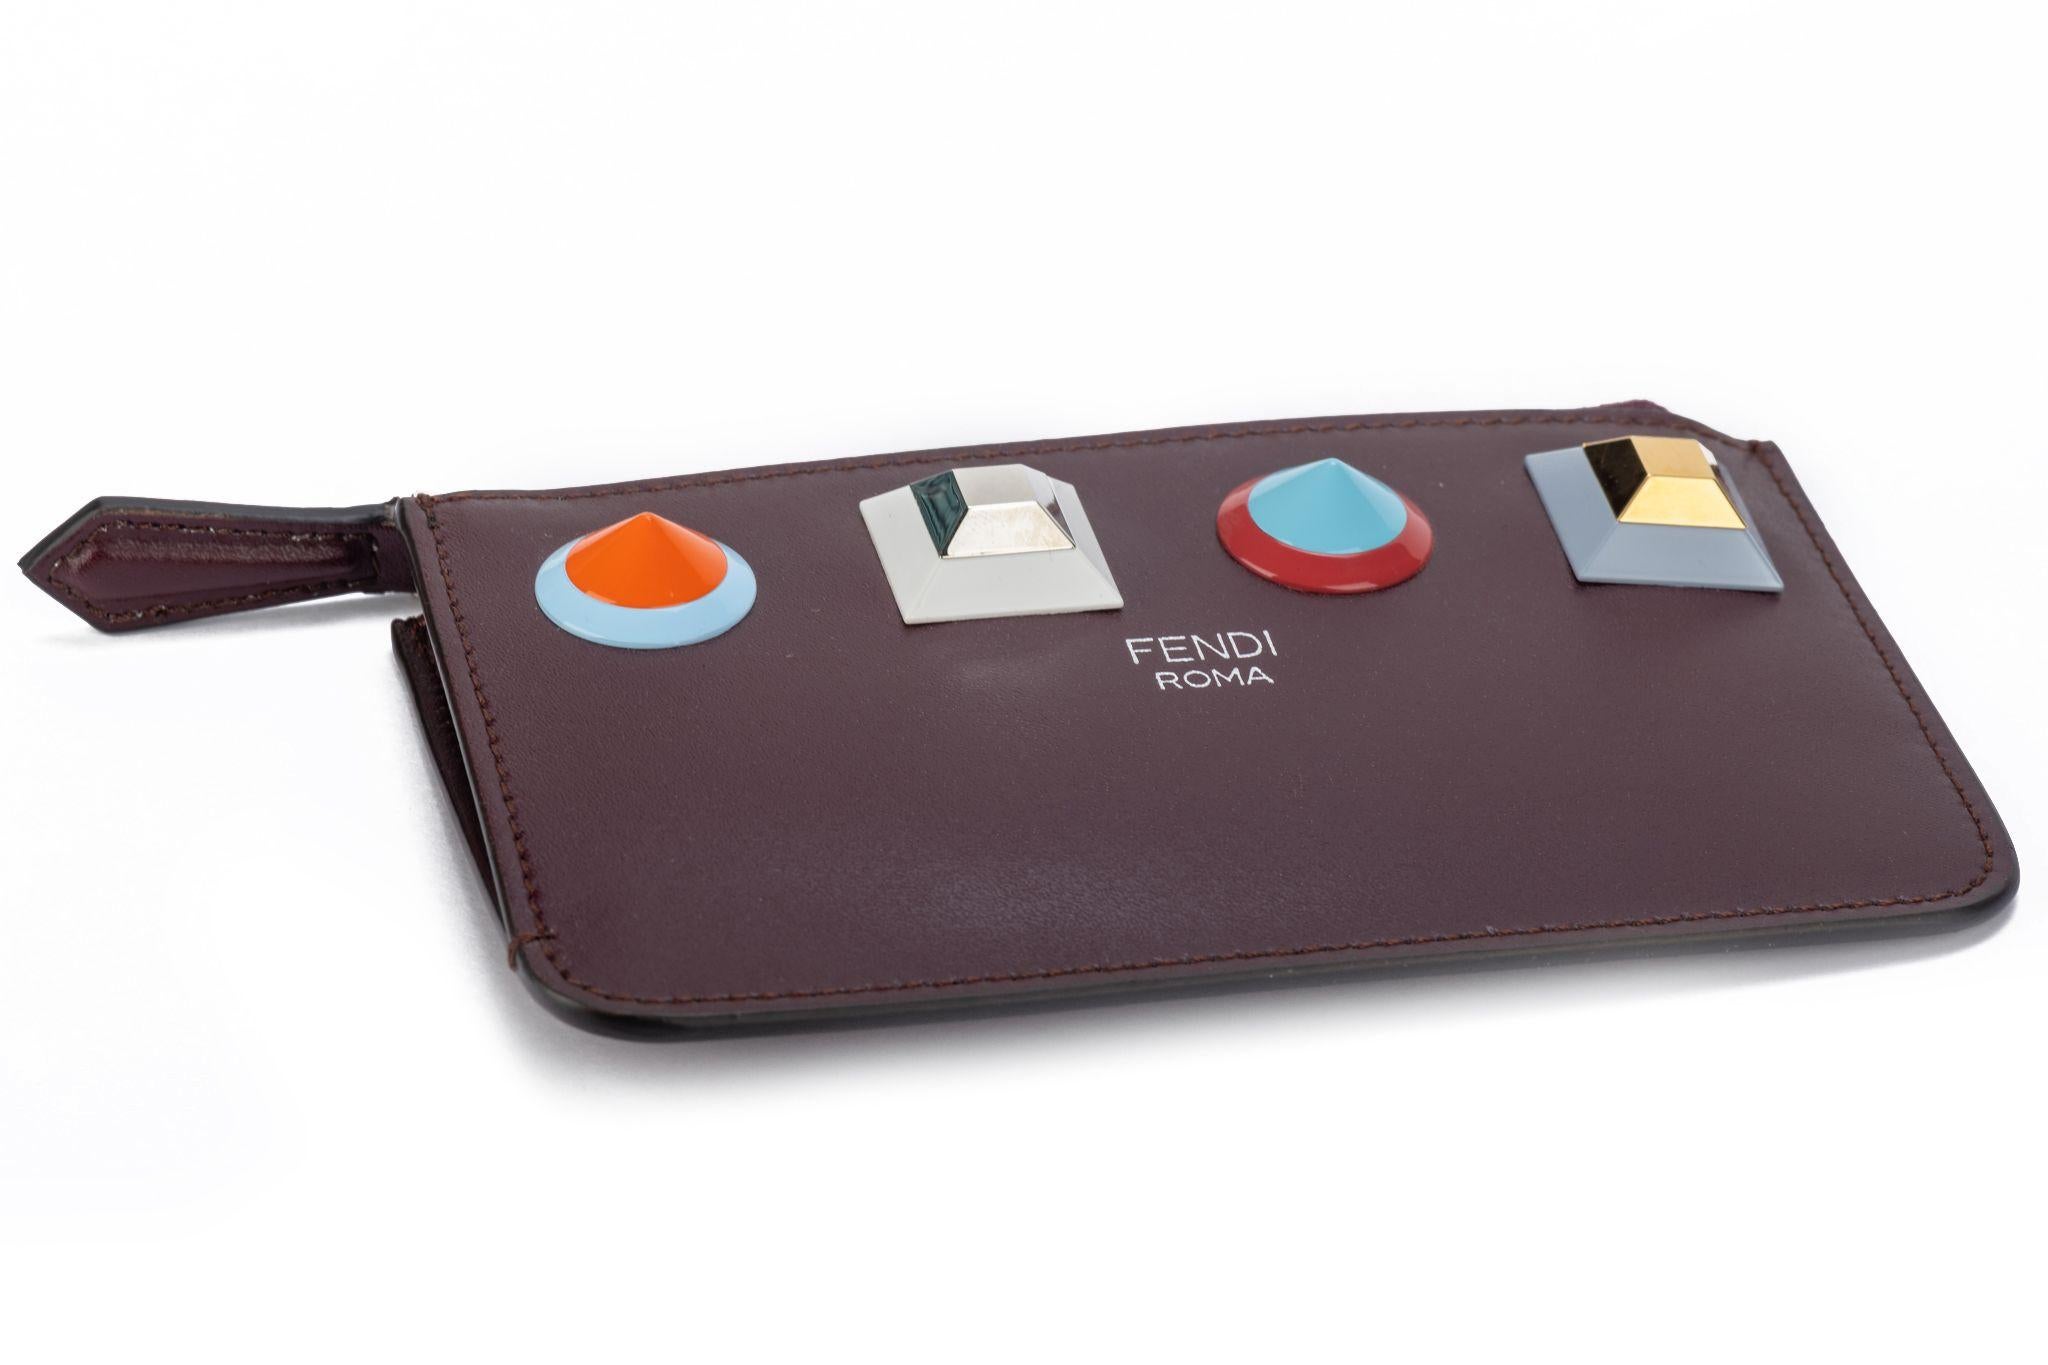 Fendi neue Burgunder Leder Schlüsseletui / Reißverschluss Brieftasche mit bunten Nieten .
Box und Original-Schutzumschlag.